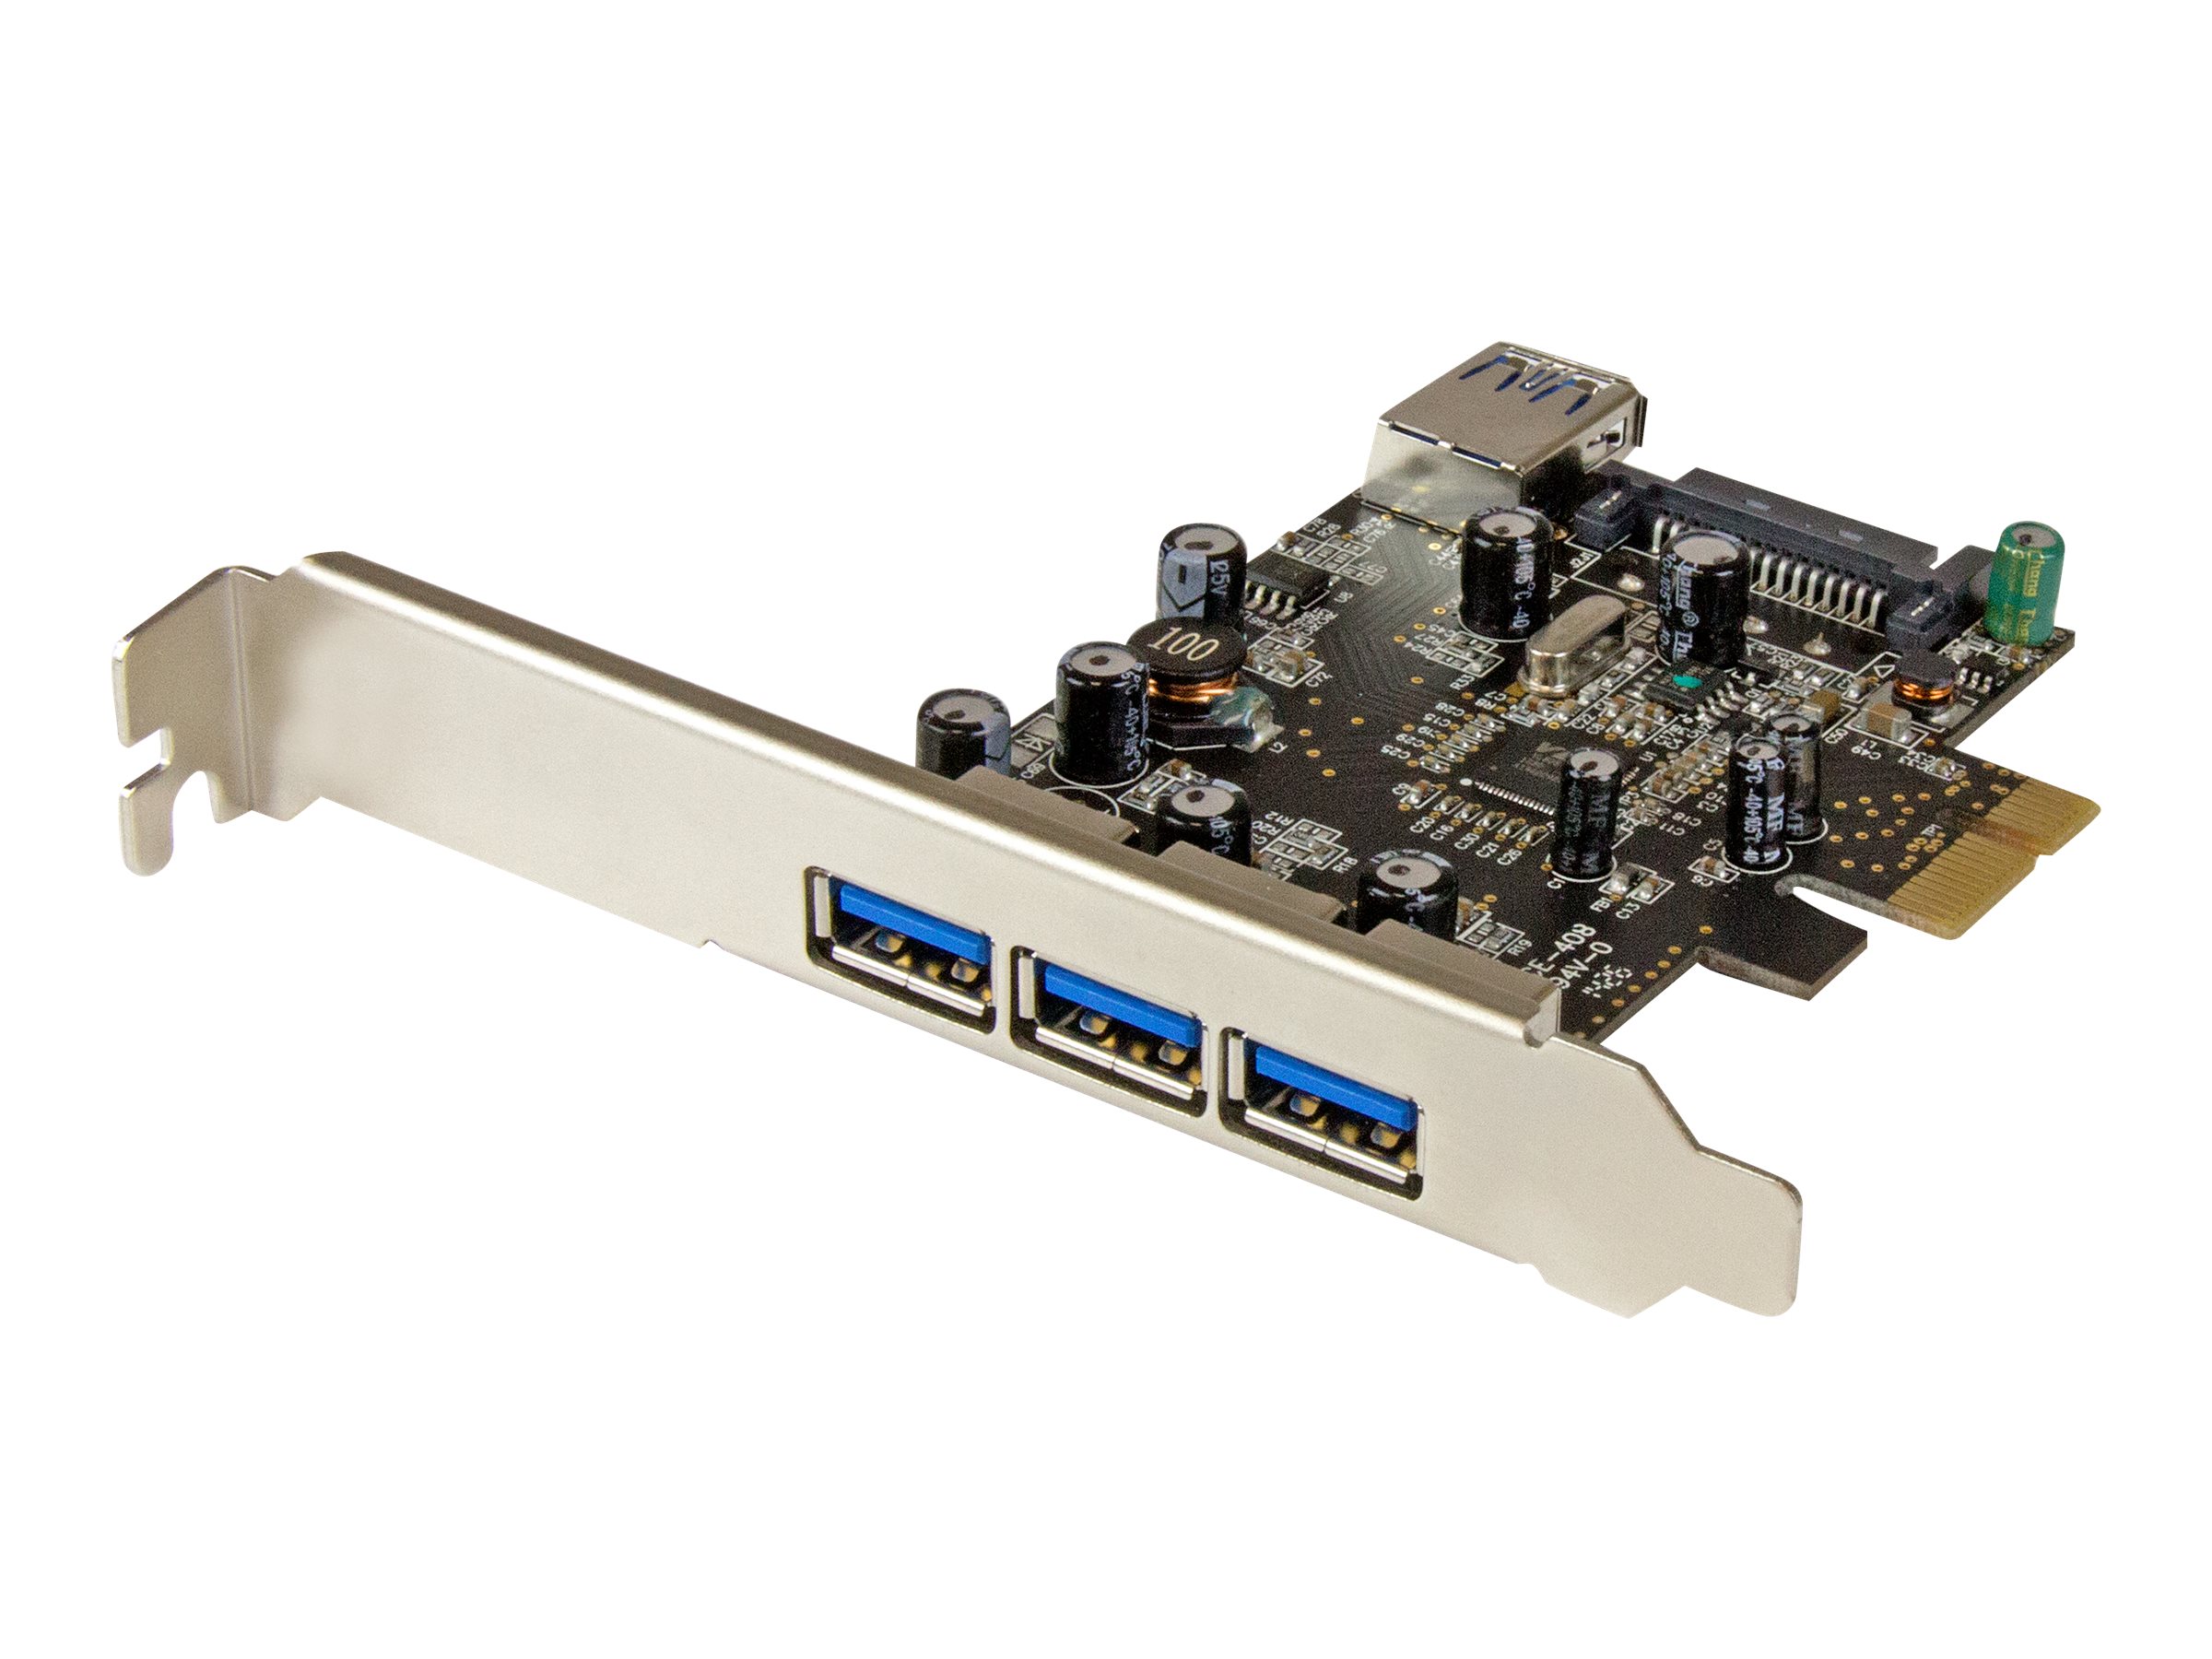 StarTech.com Carte contrôleur PCI Express à 4 ports USB 3.0 - 3 externes 1 interne - Adaptateur PCIe USB avec UASP - Adaptateur USB - PCIe 2.0 profil bas - USB 3.0 x 4 - pour P/N: CFASTRWU3, ST1030USBM, ST43004UA, ST4300MINI, TB31PCIEX16 - PEXUSB3S42 - Contrôleurs USB